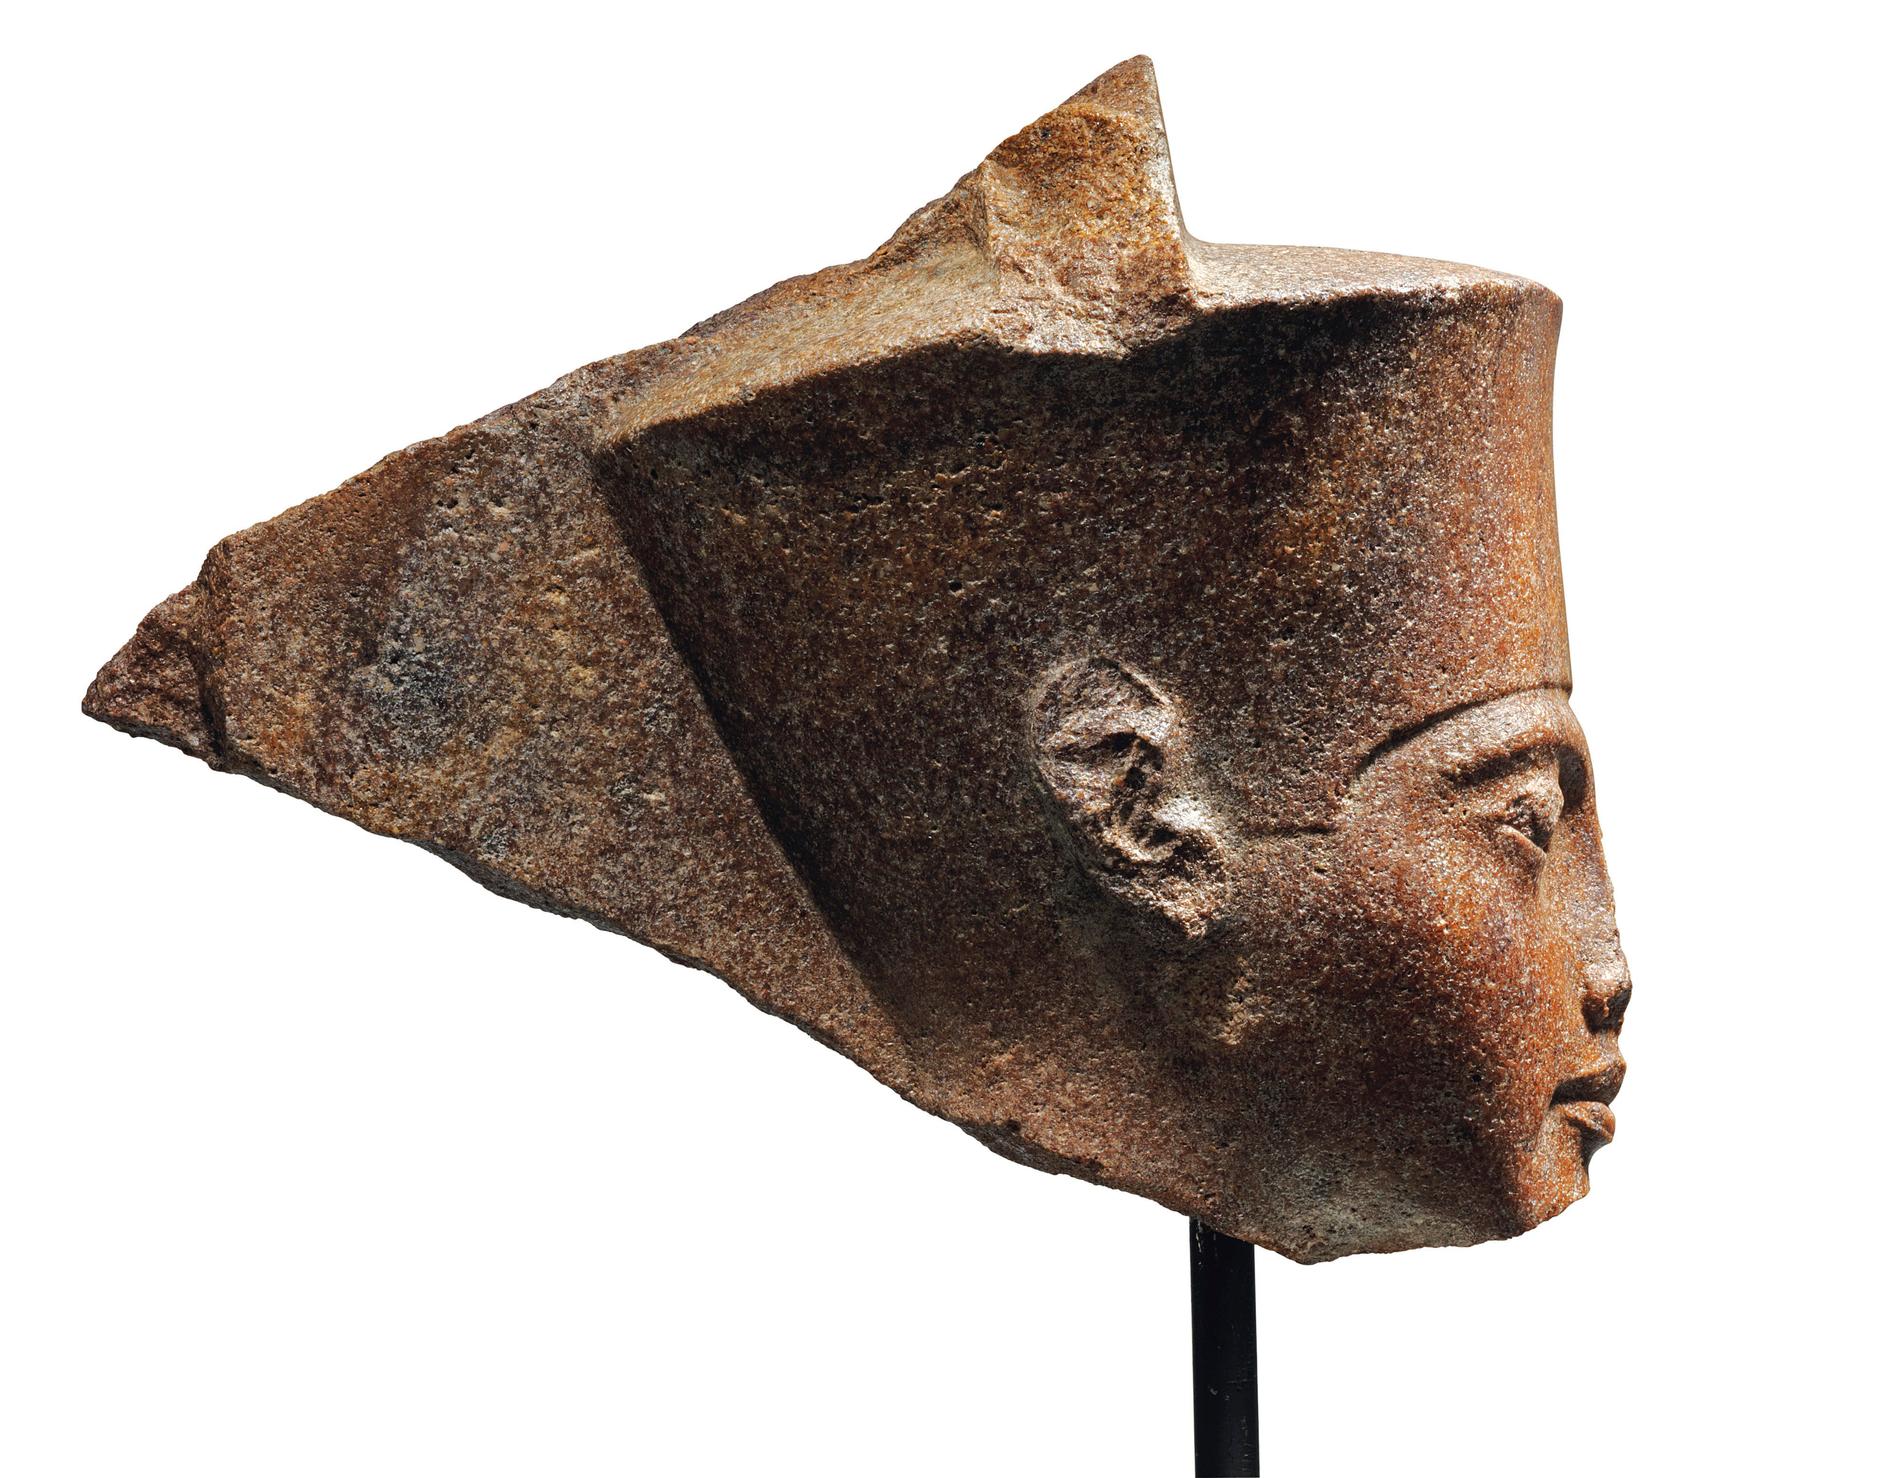 En 3 000 år gammal skulptur av den egyptiske faraon Tutankhamon har sålts för över 55 miljoner kronor.